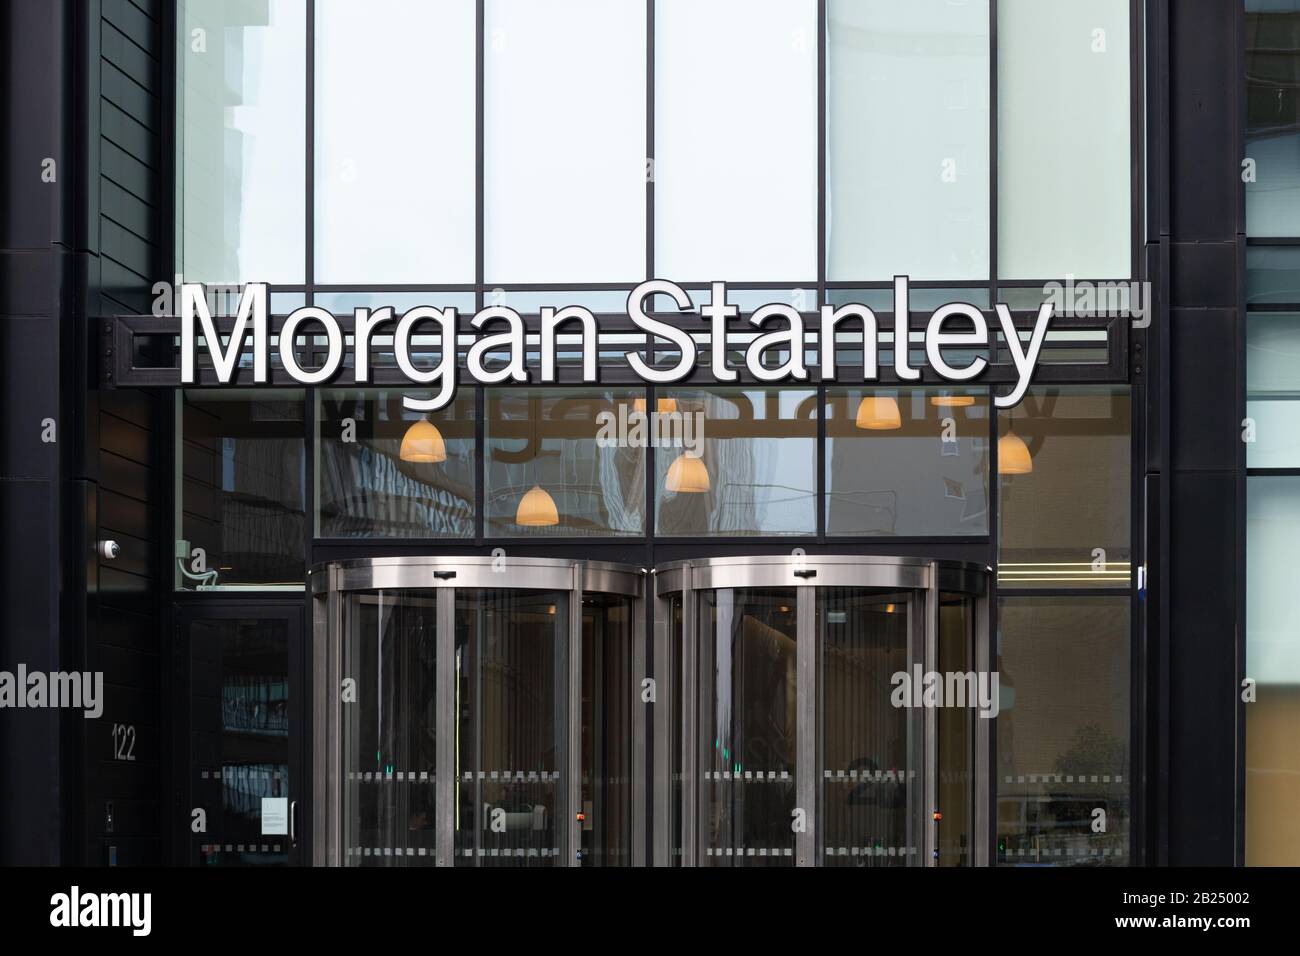 Morgan Stanley signe à l'extérieur des bureaux de Glasgow, Écosse Royaume-Uni Banque D'Images